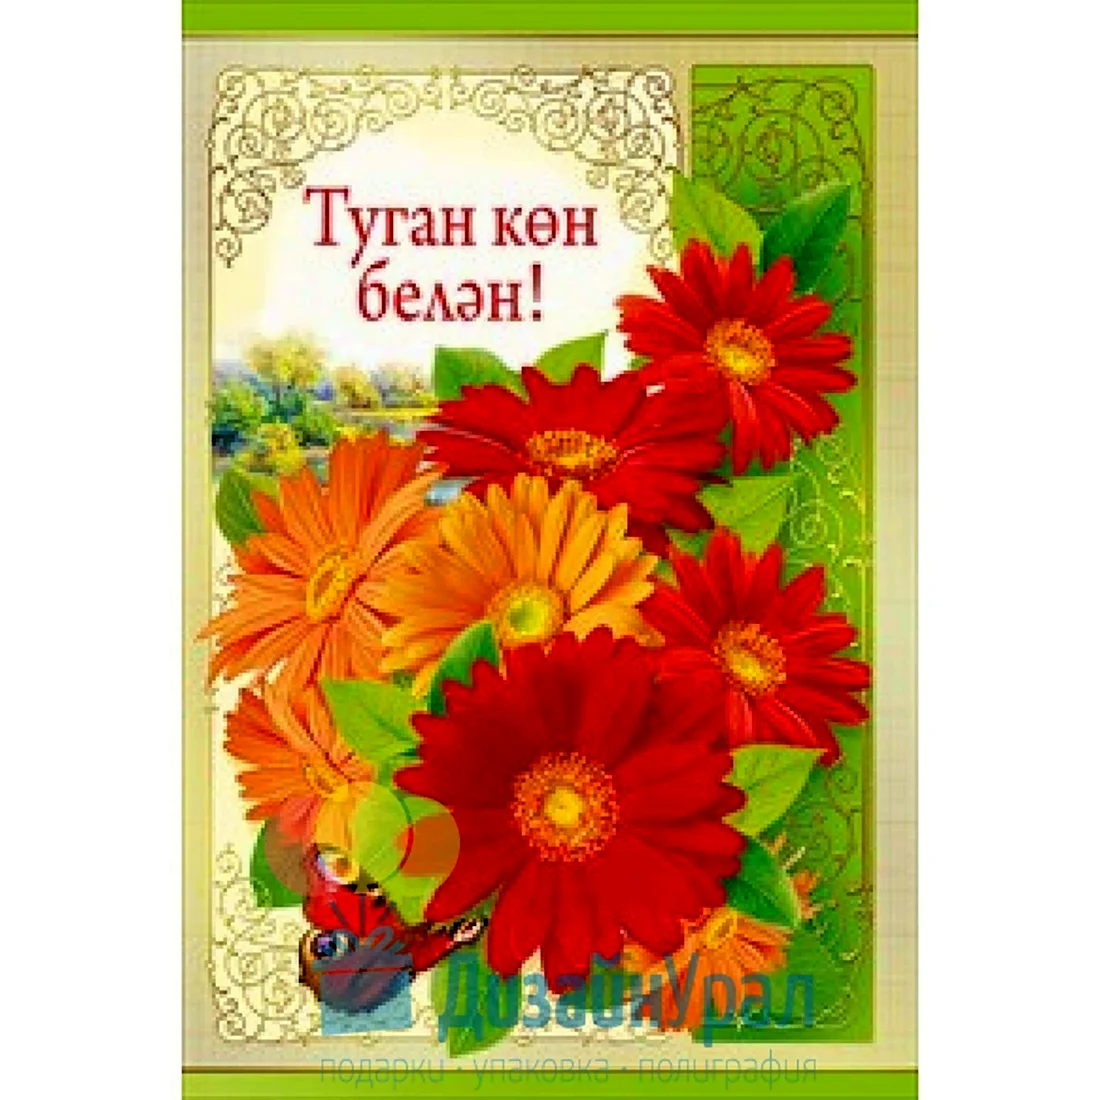 С днем рождения на татарском. Открытка с поздравлением